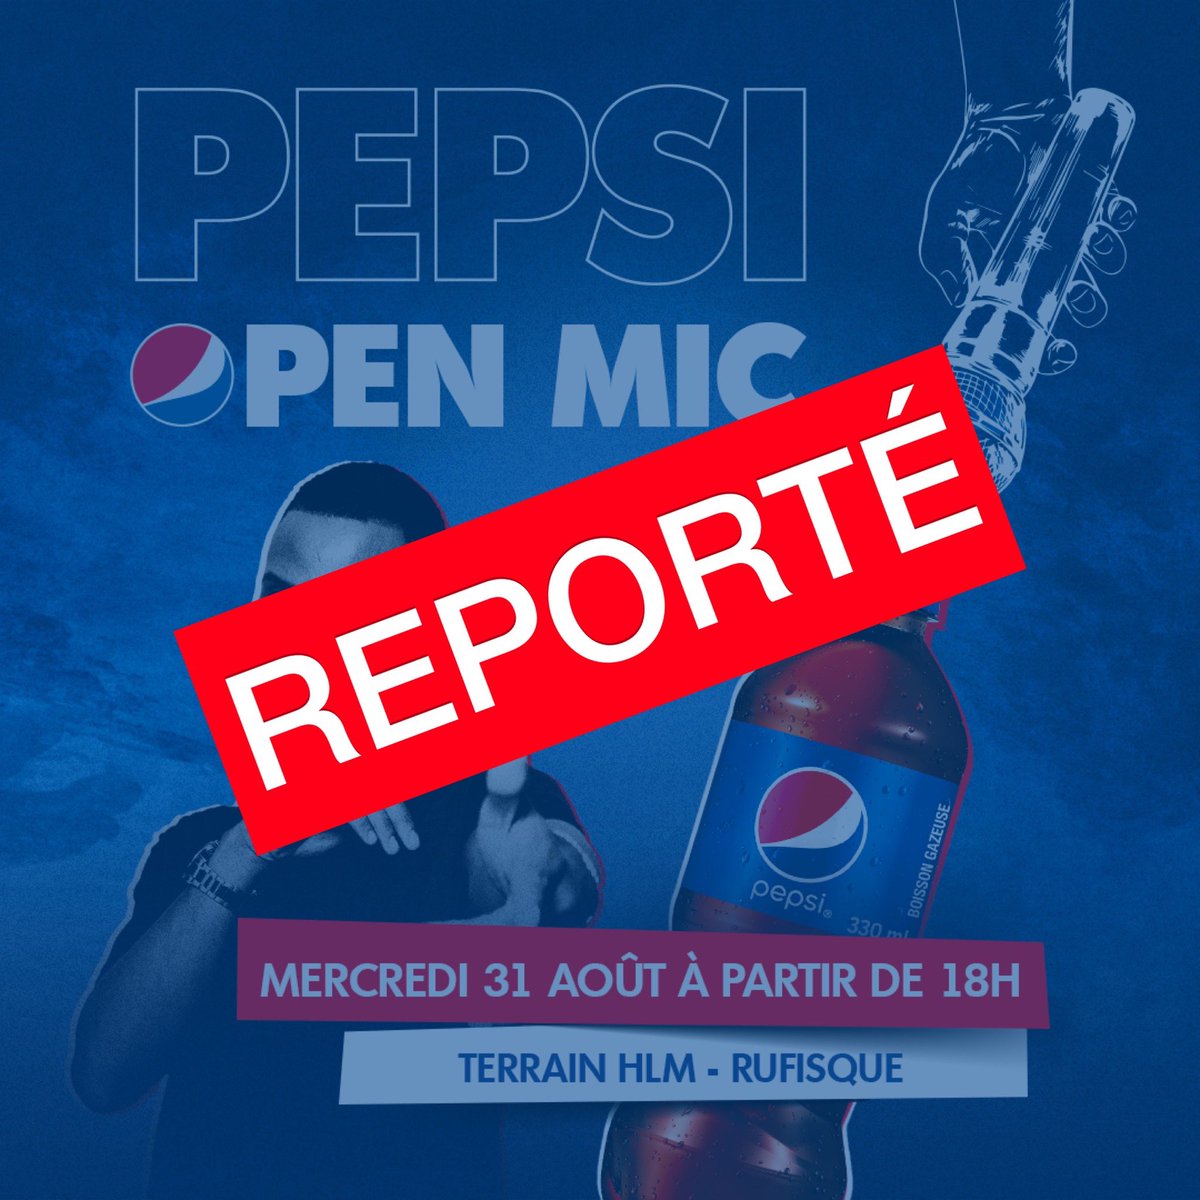 Le Pepsi Open Mic de RIO a finalement été reporté à une date ultérieure dû à la pluie d’aujourd’hui. Mais dara deñ koy bissat mu gueune neex rek🎤😉 #pepsilsalife #fortheloveofit #pepsiopenmic